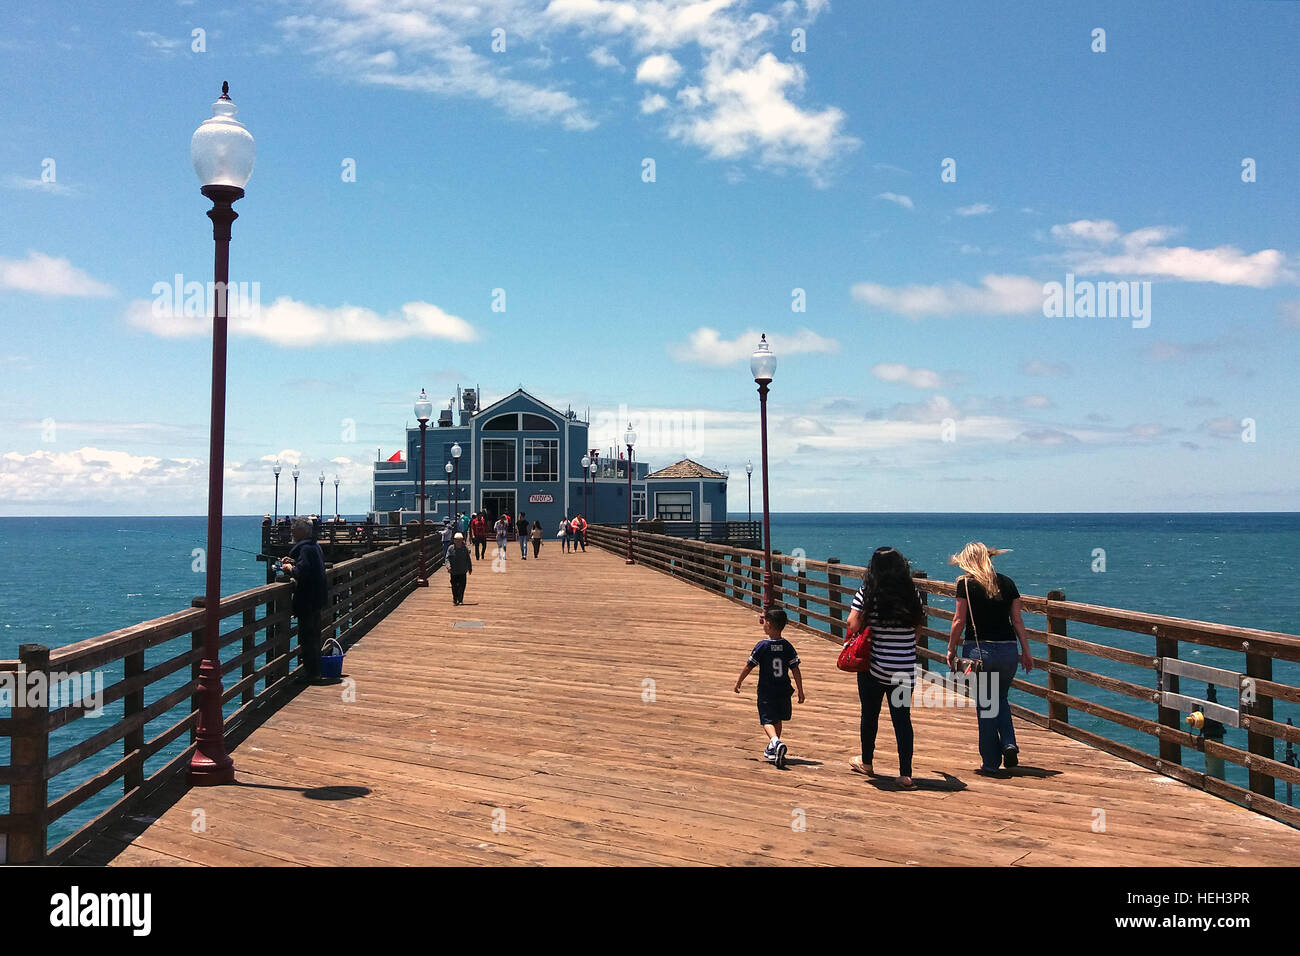 Oceanside pier, Oceanside, California, USA Stock Photo